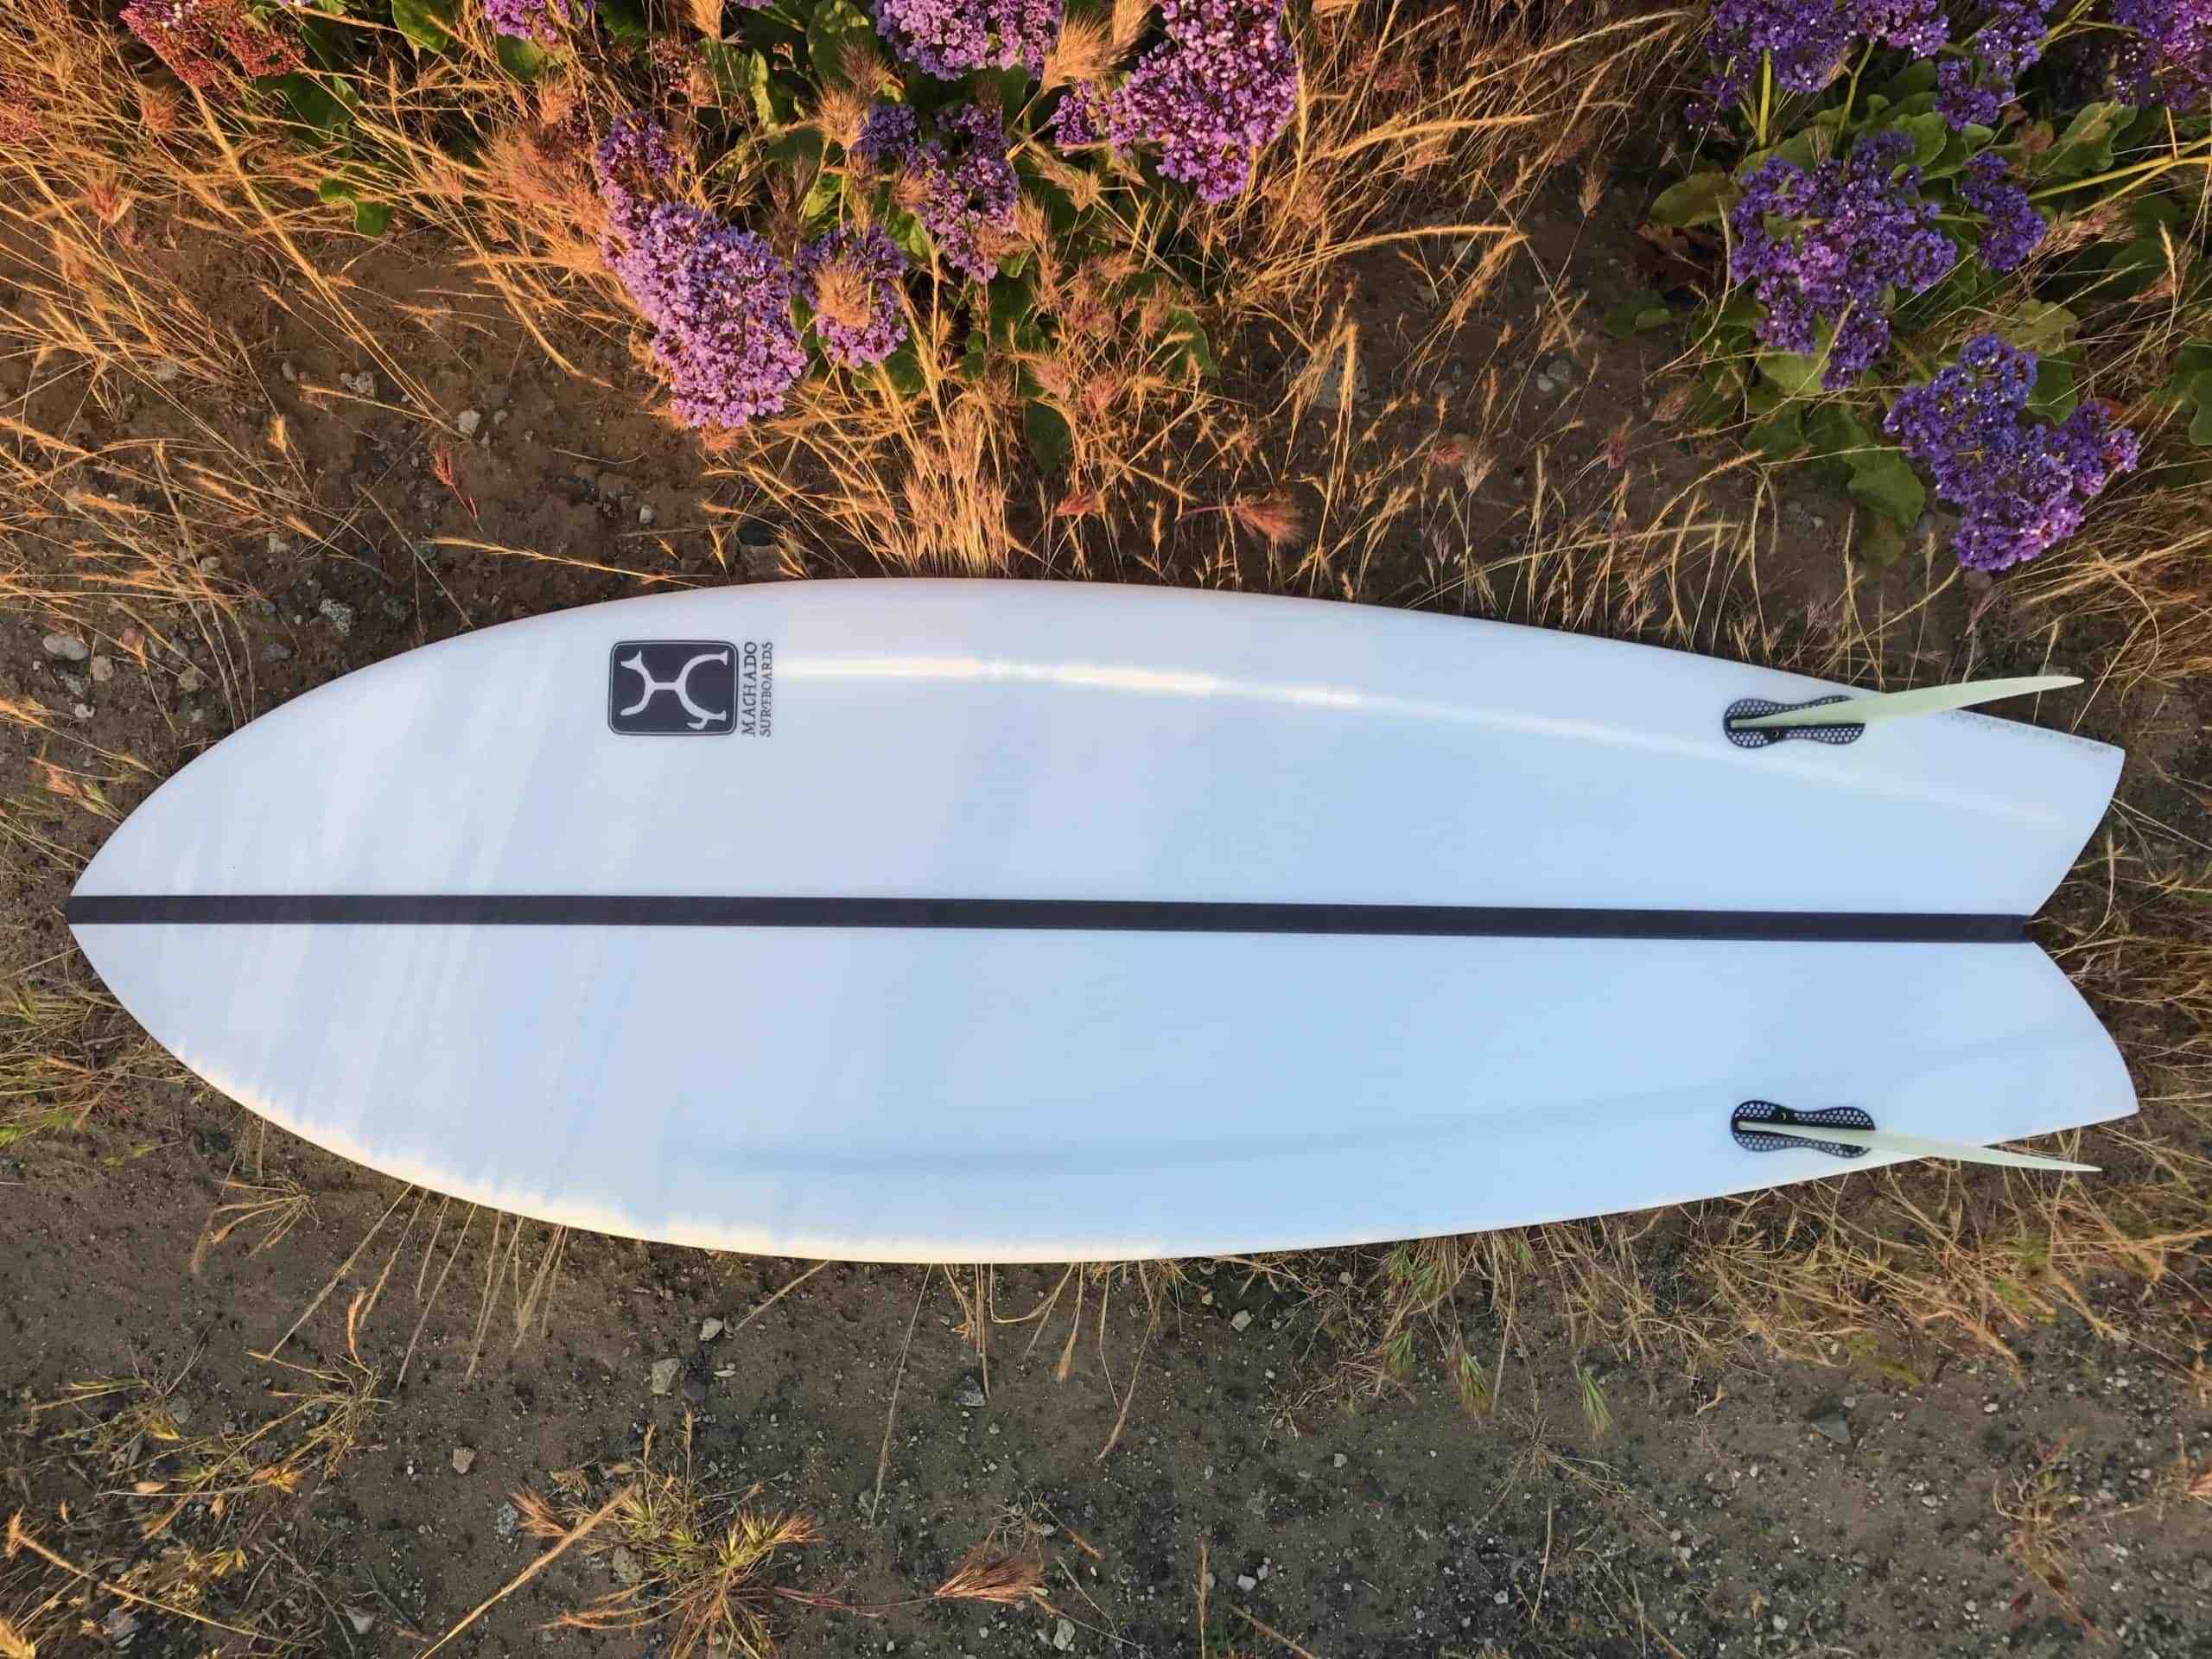 Quelle taille de planche de surf pour debuter ?